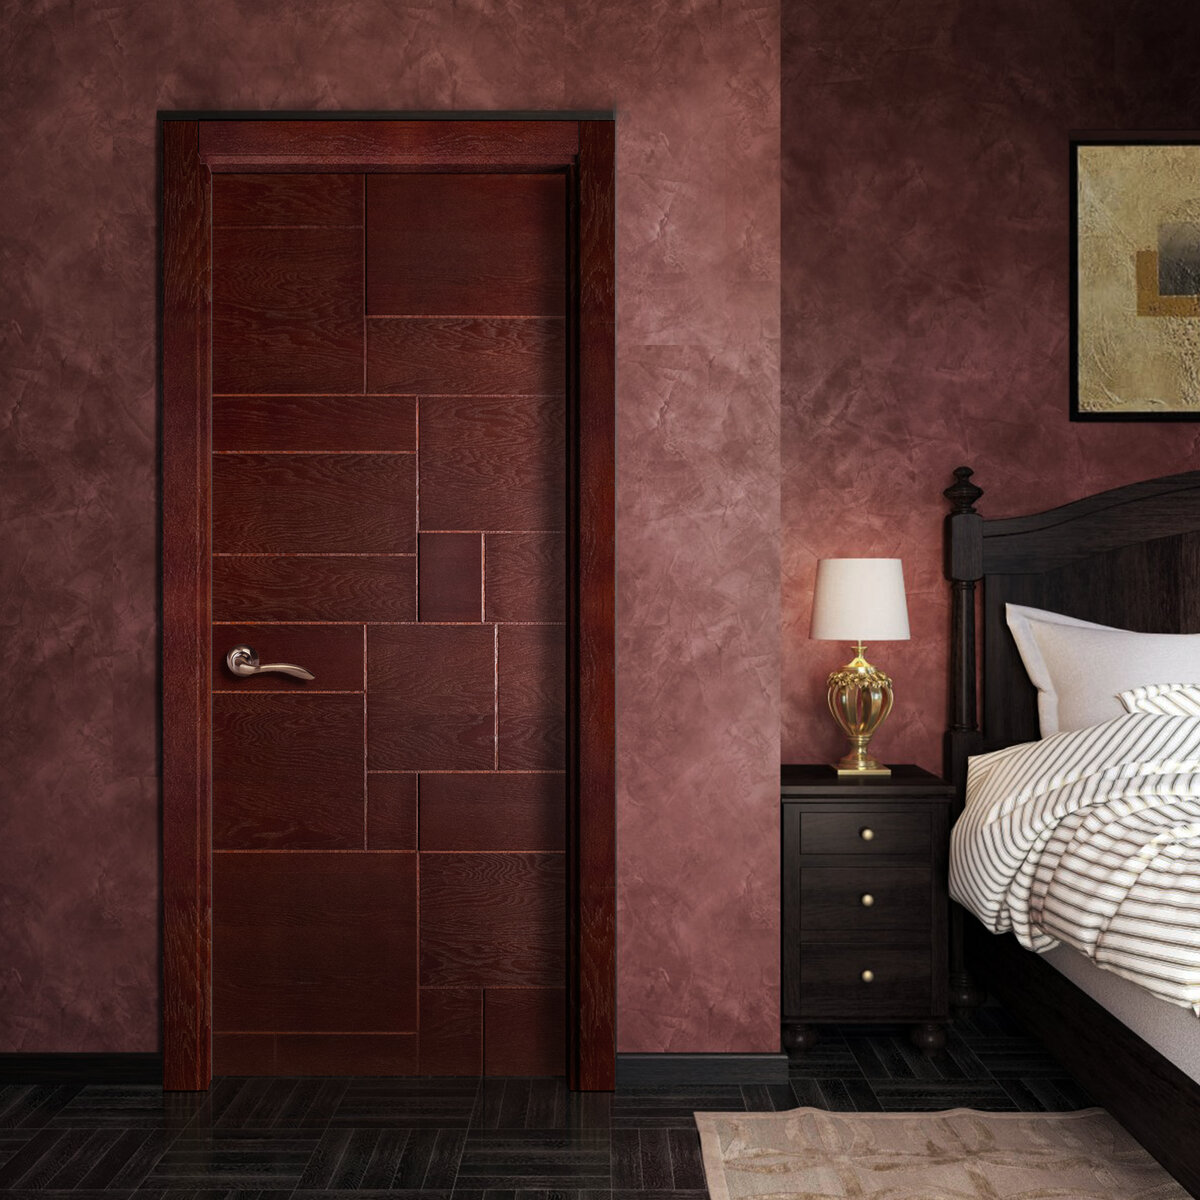 Итальянские деревянные двери считаются эталоном качества, признанным во всем мире.